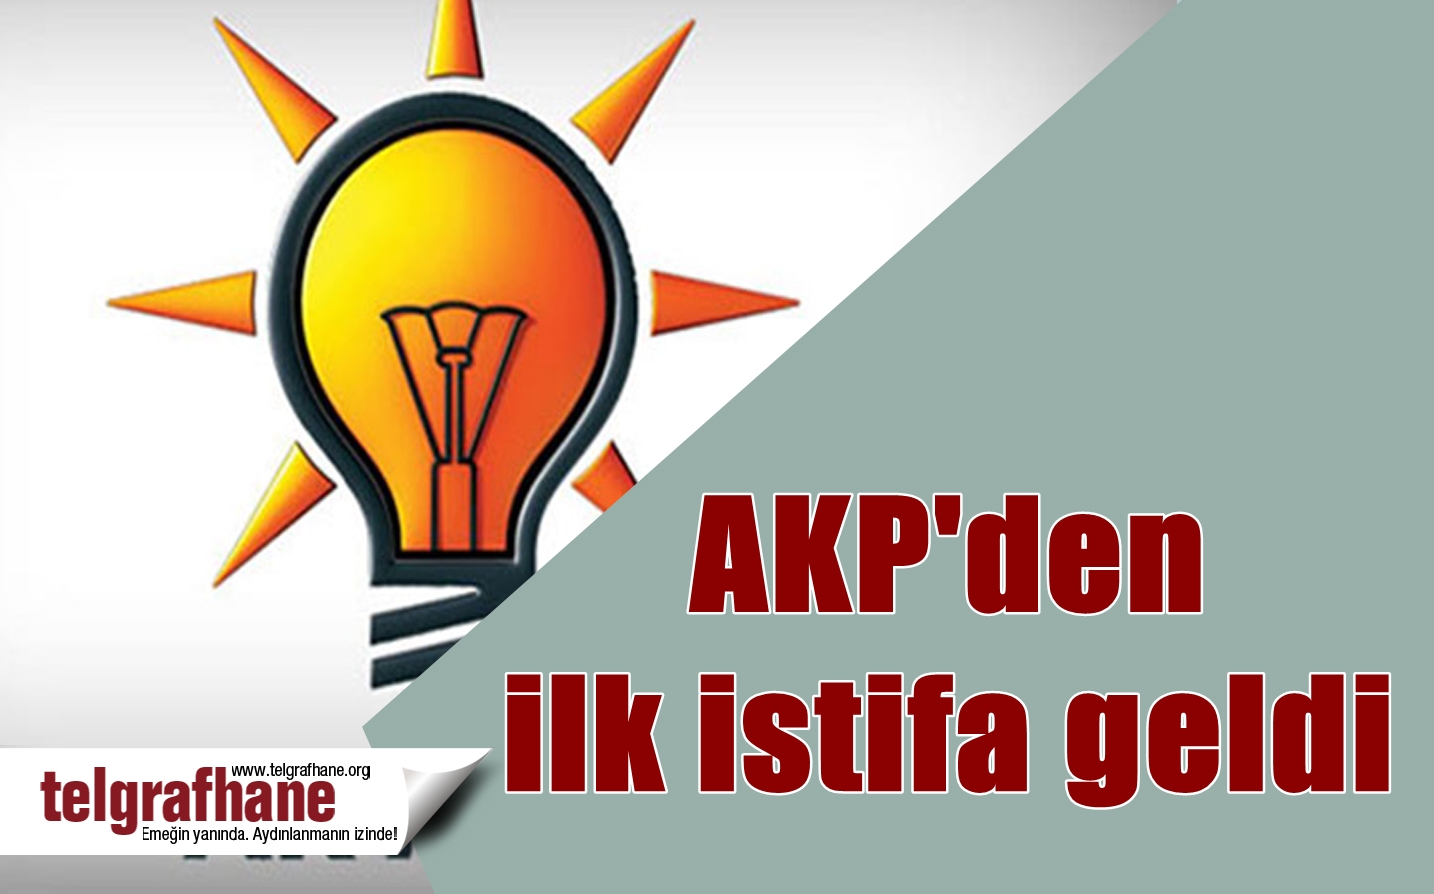 AKP’den ilk istifa geldi